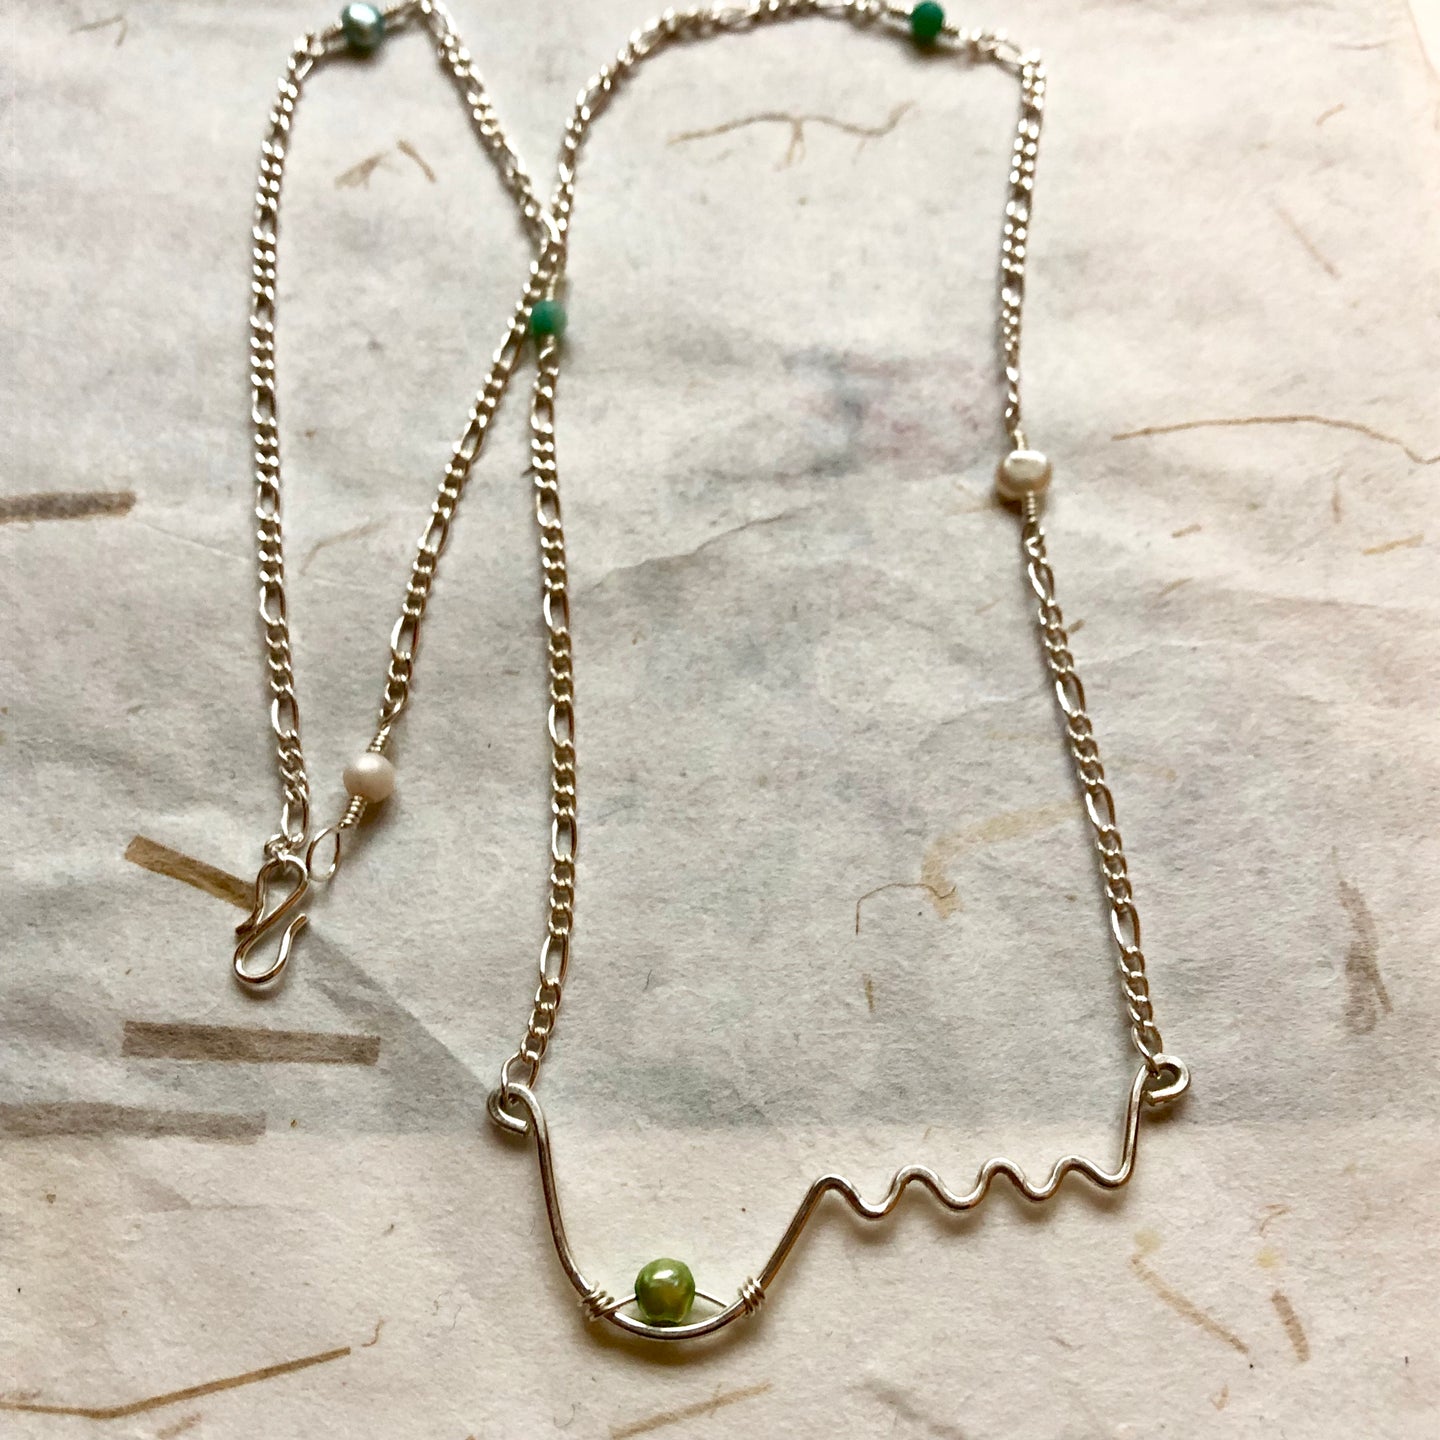 'Femme' halskæde Ltd i sølv med et bryst og grøn perle